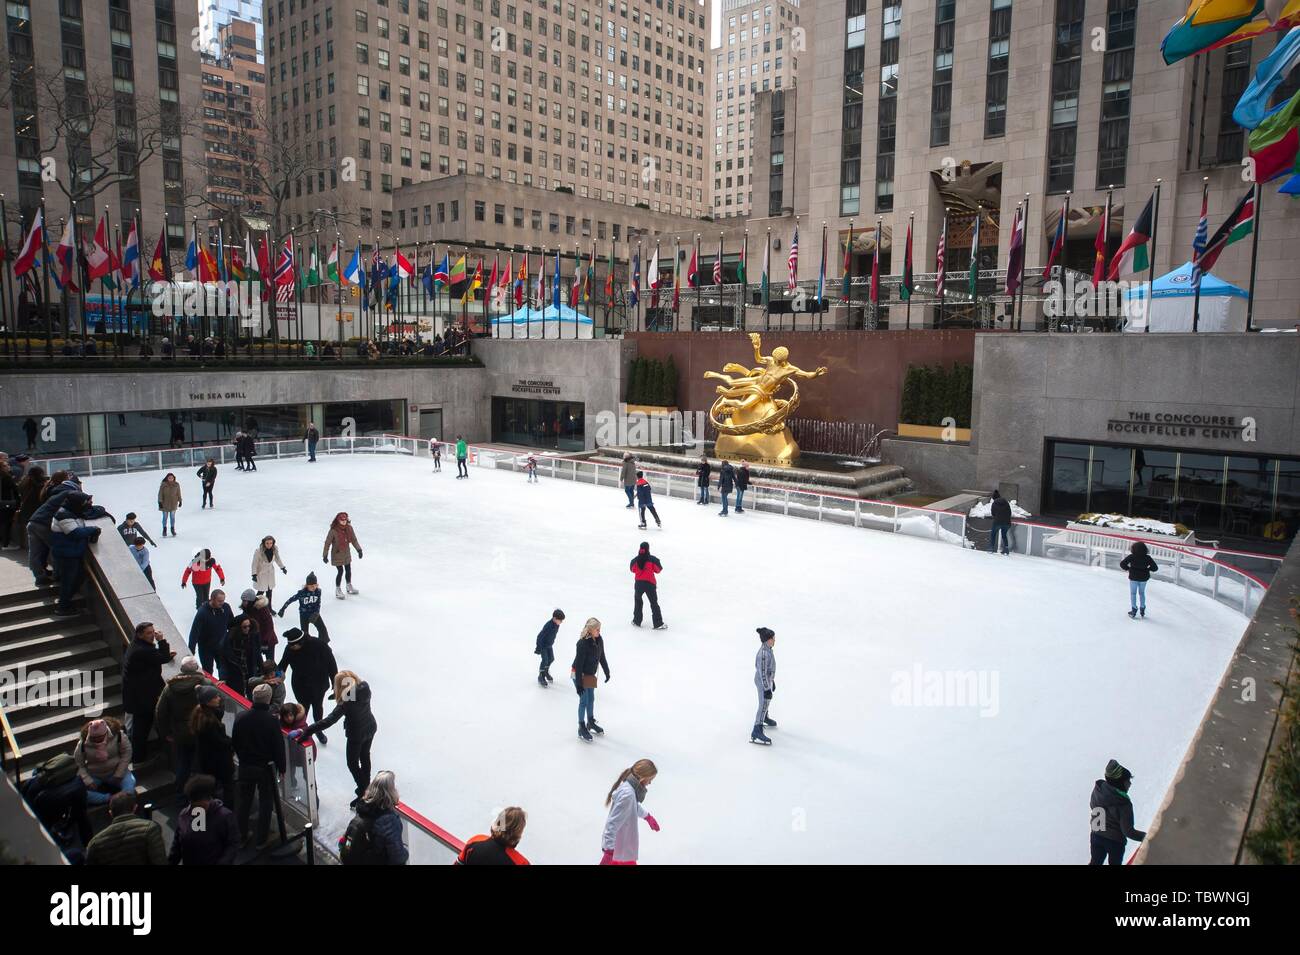 Pista de patinaje sobre hielo en el Rockefeller Center de Nueva York. Stock Photo